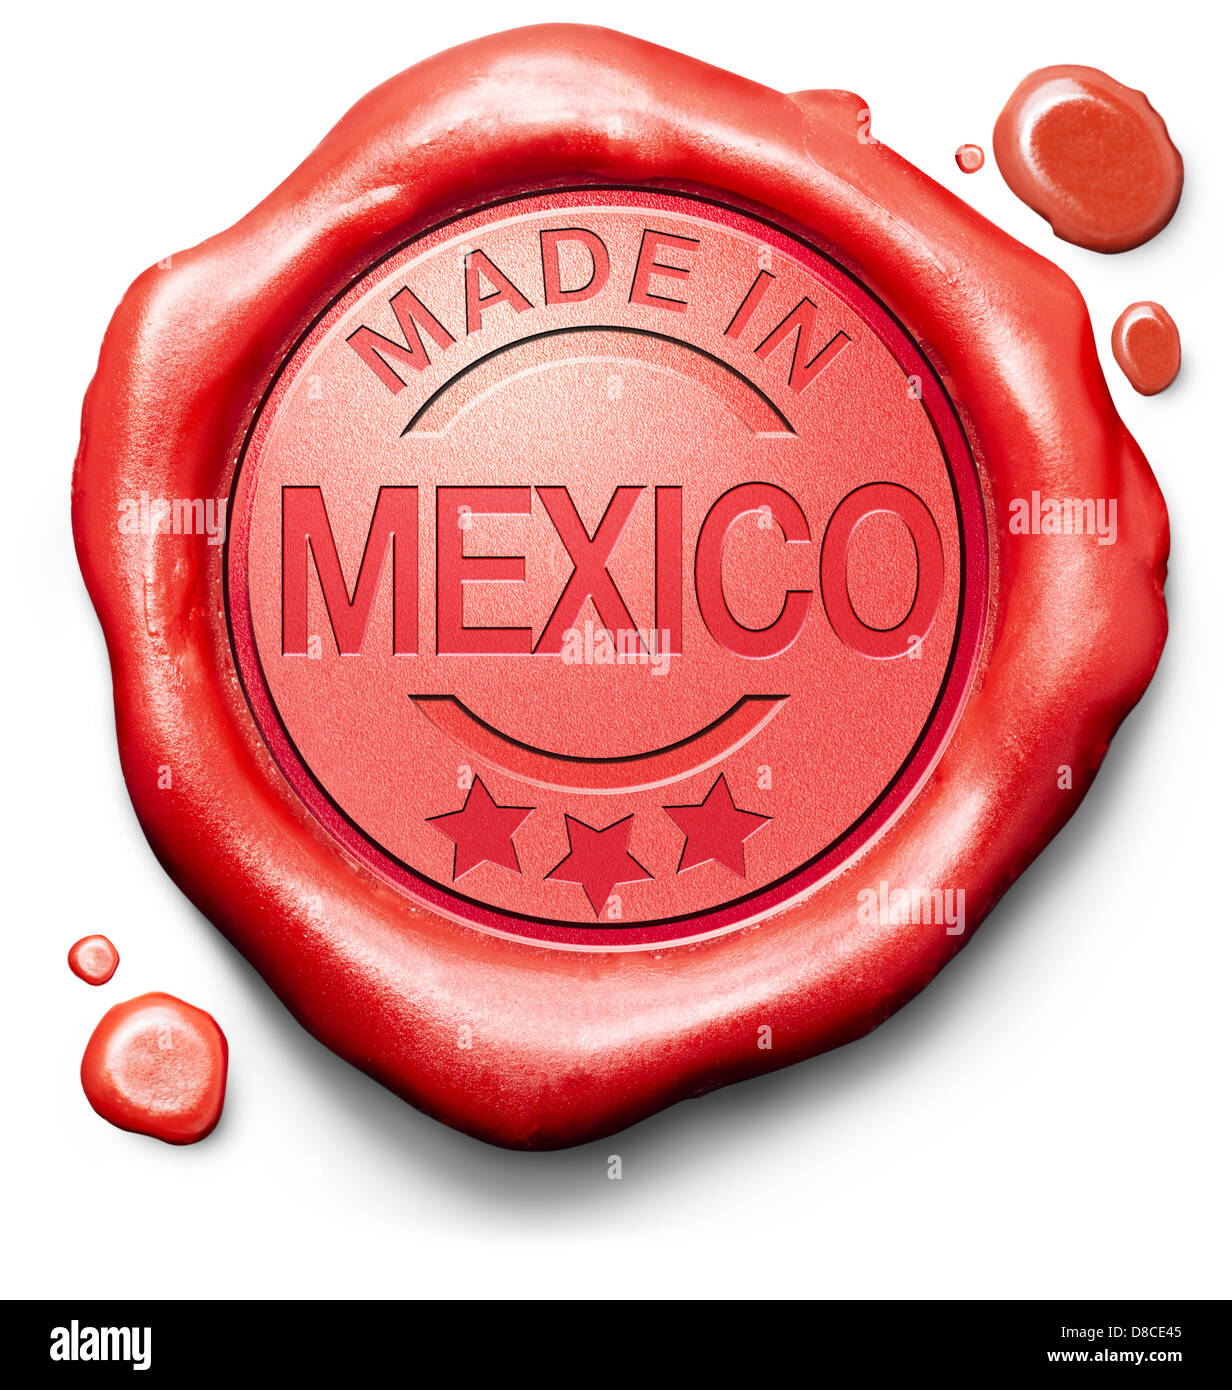 Realizzato in Messico prodotto originale comprare locale acquista messicana autentica etichetta di qualità di cera rossa guarnizione timbro Foto Stock